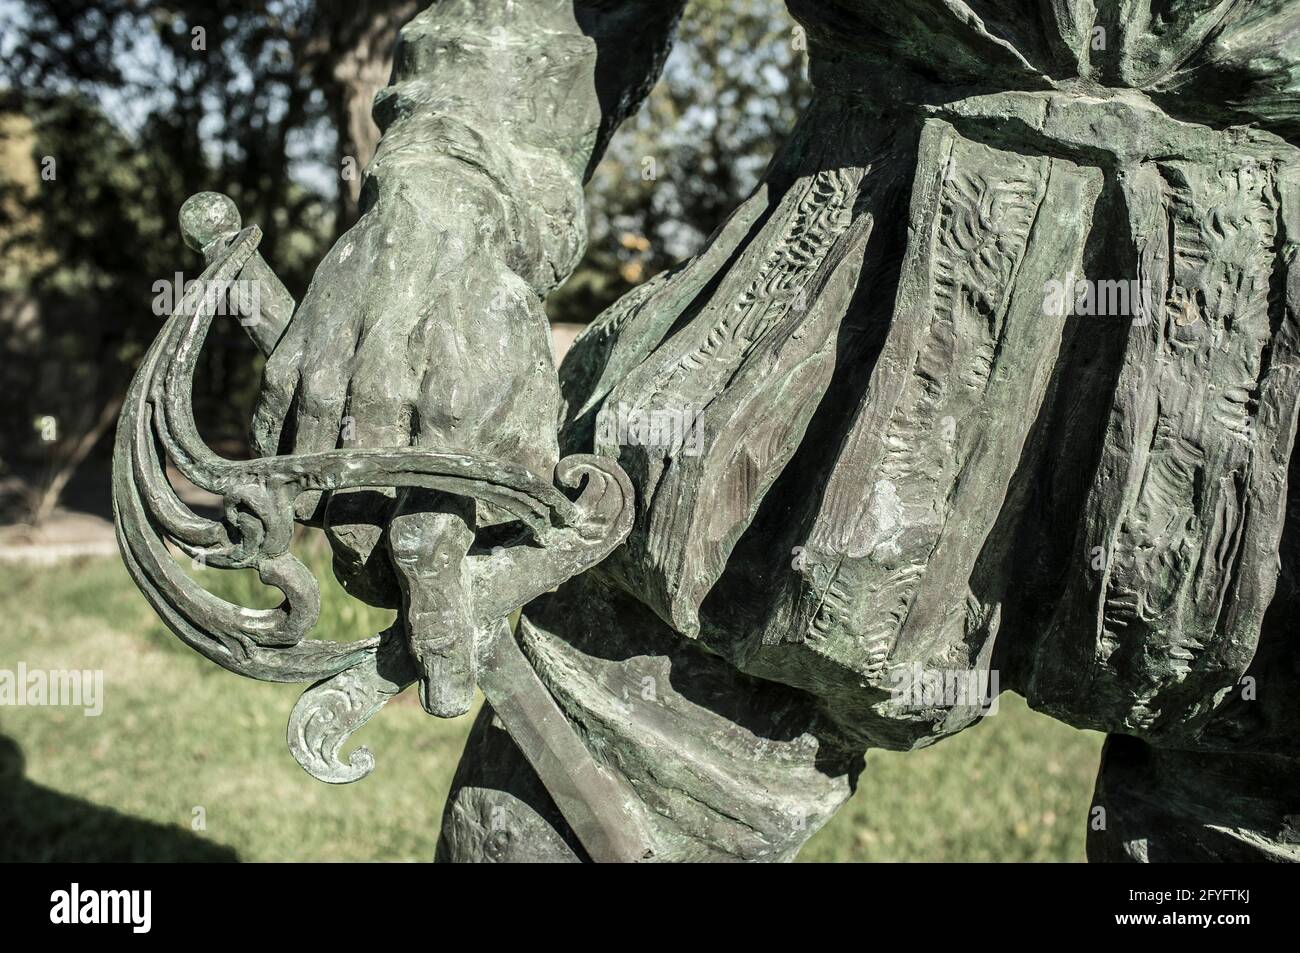 Statue de Francisco Pizarro. Gros plan de l'épée. Conquérant espagnol de l'Empire Inca. Fabriqué par Estanislao Garcia en 2003 Banque D'Images